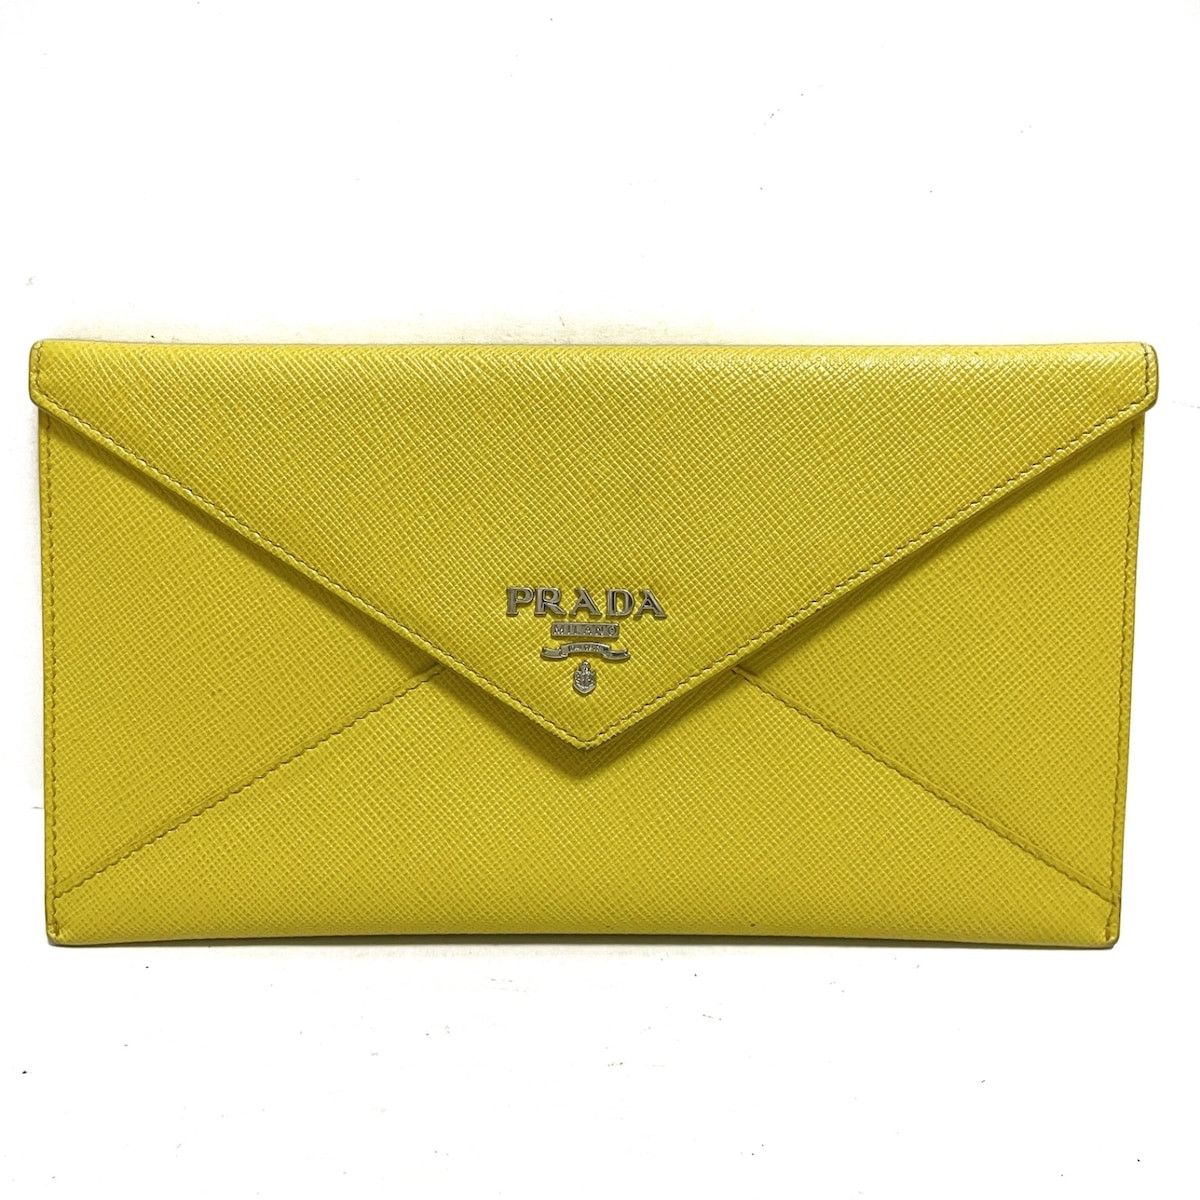 Prada Prada wallet | Grailed